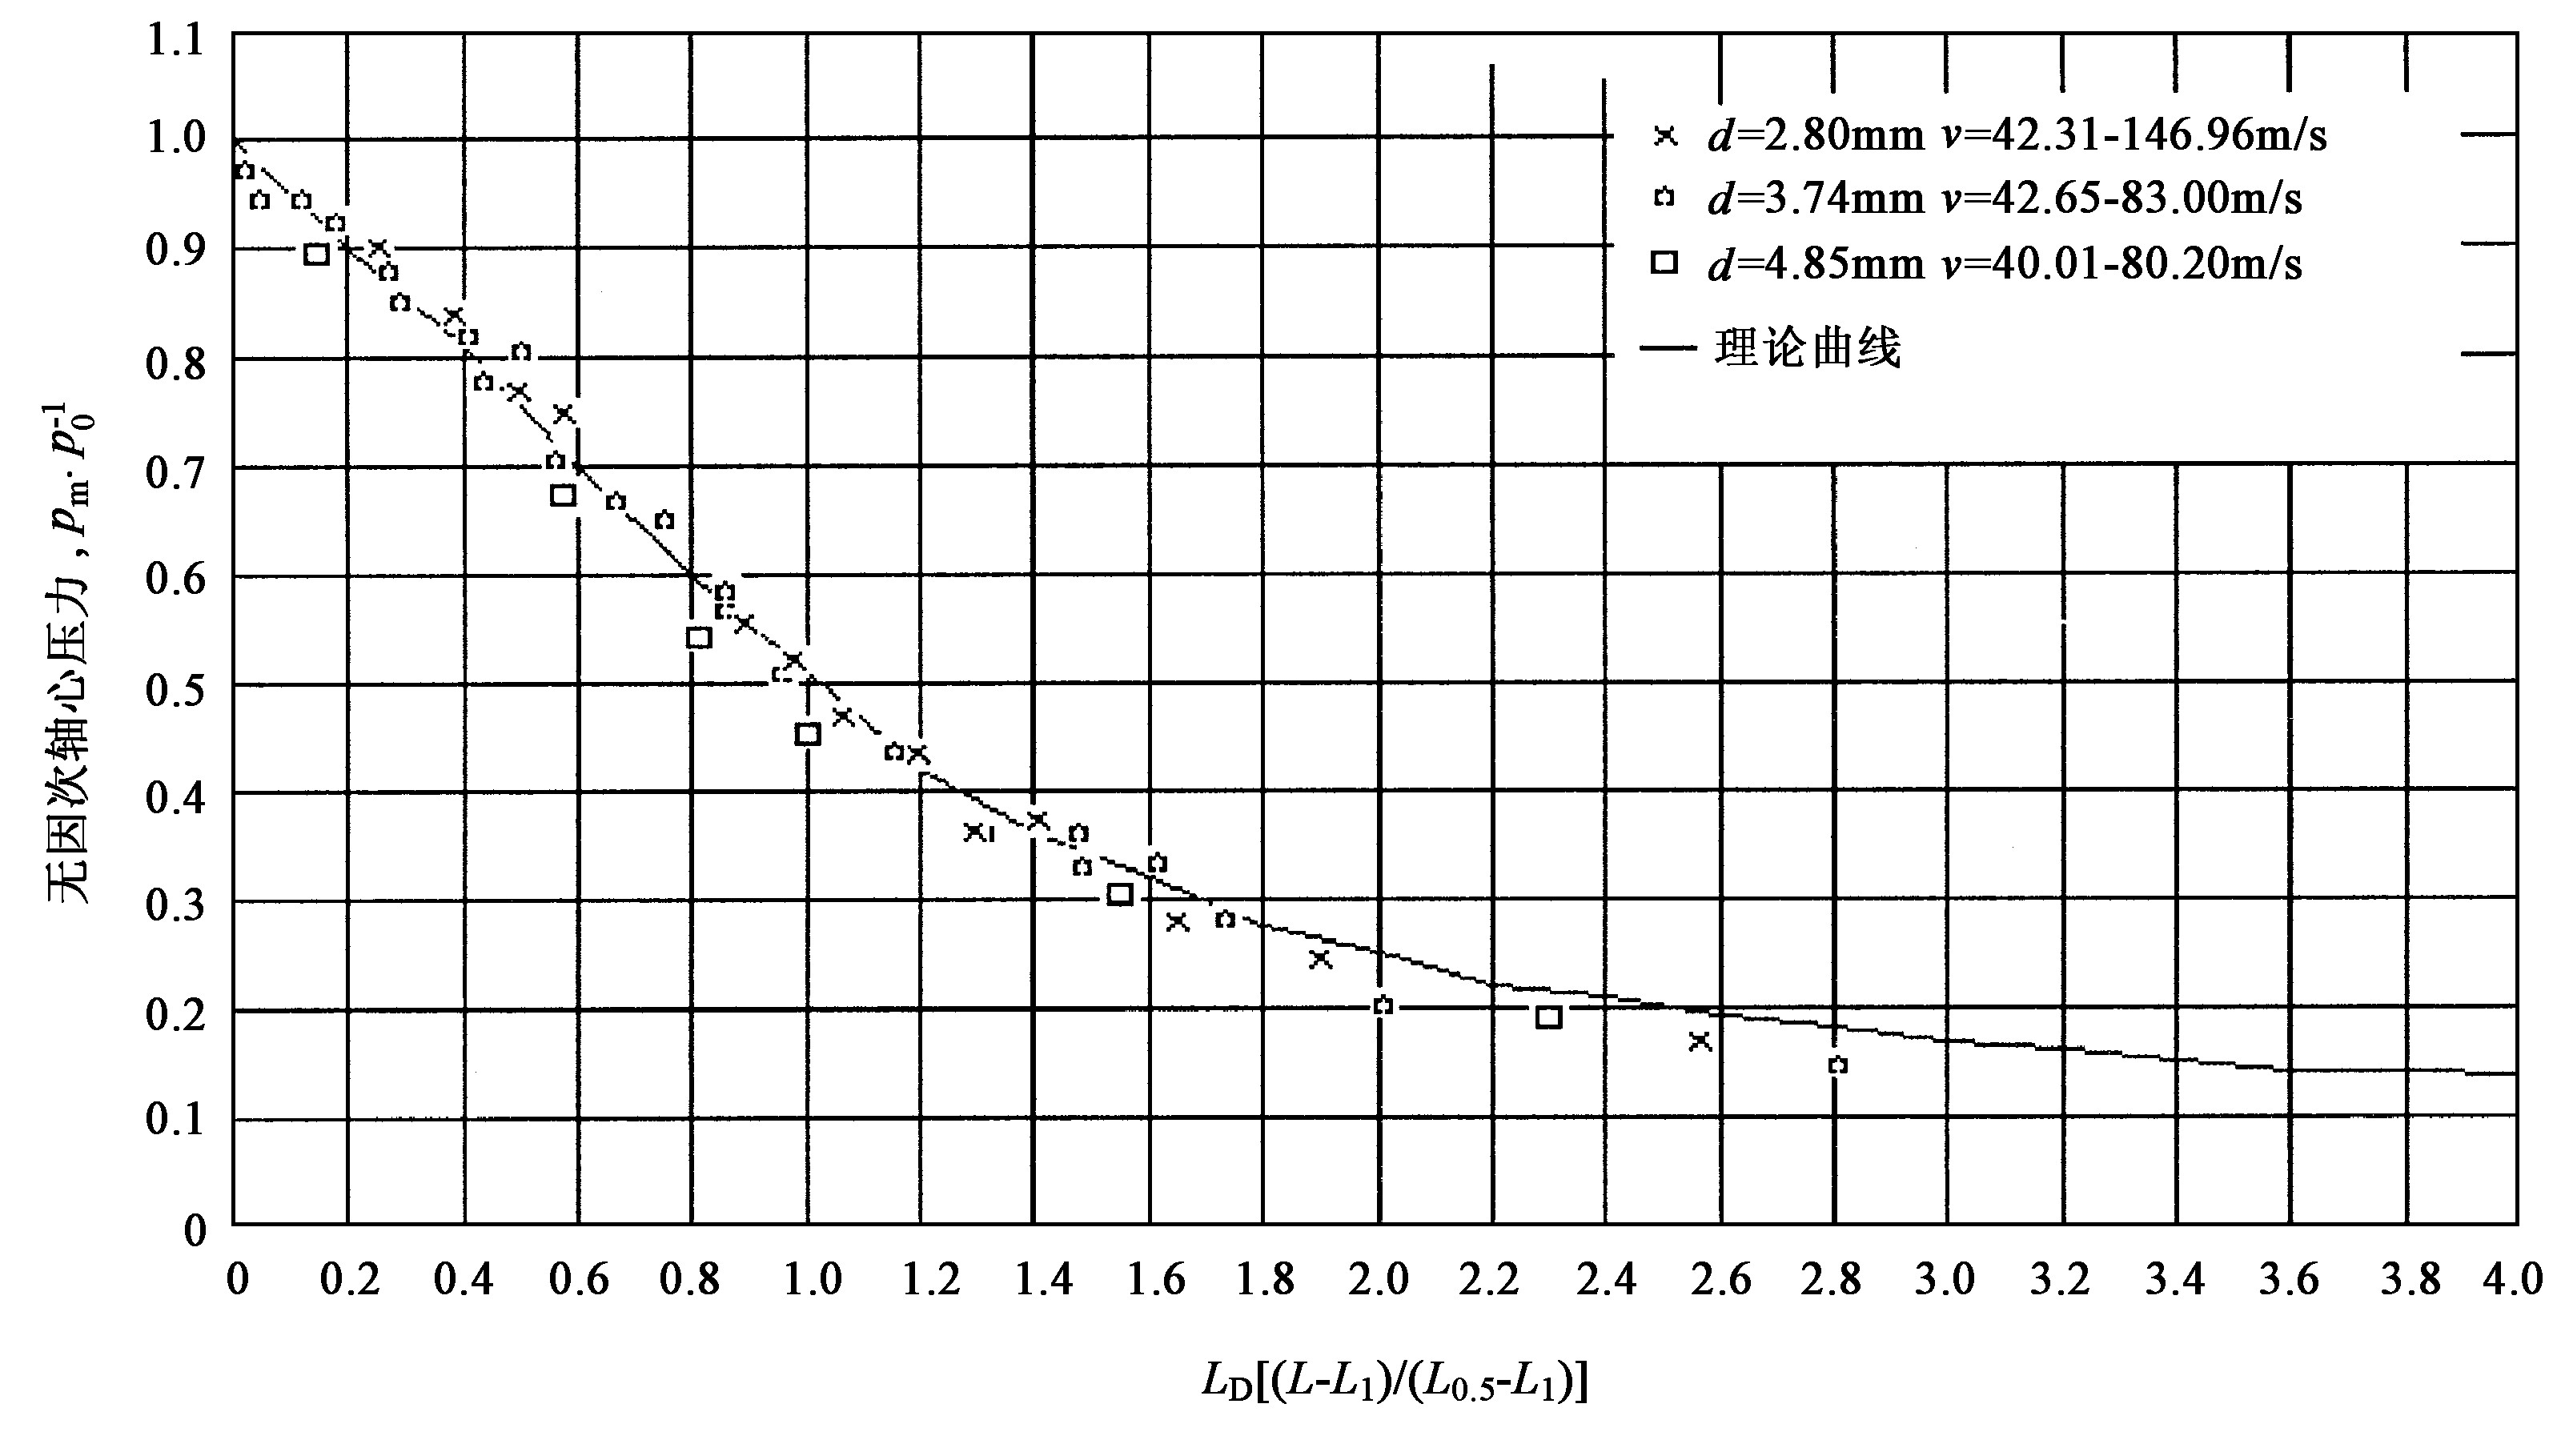 图1 有漫流影响下锥型小喷嘴的射流轴心压力衰减规律